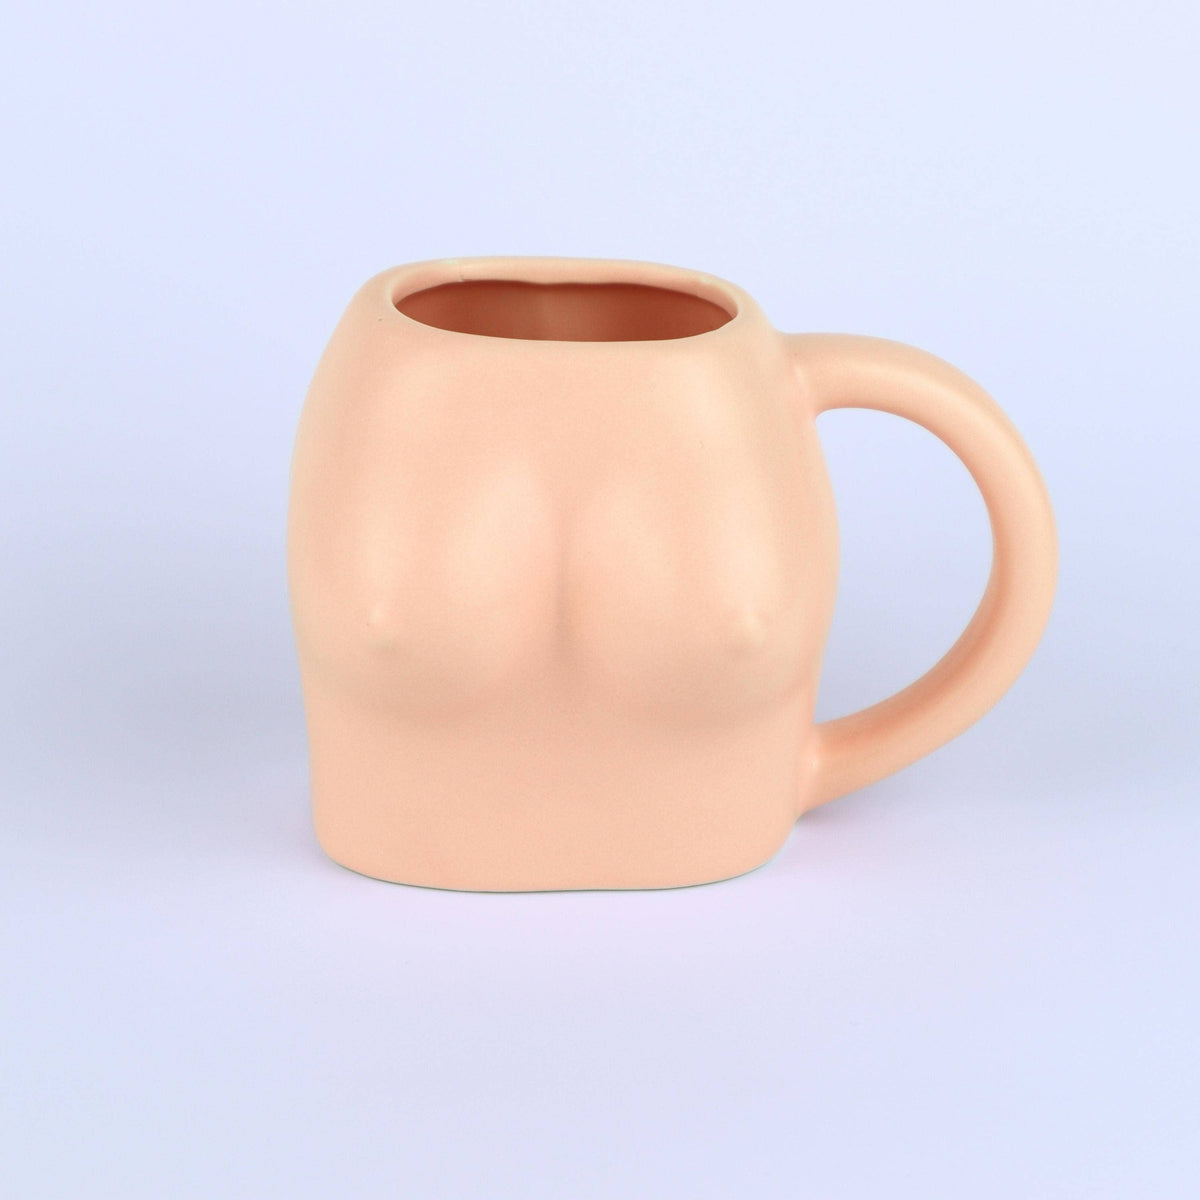 Boob Mug: Teal